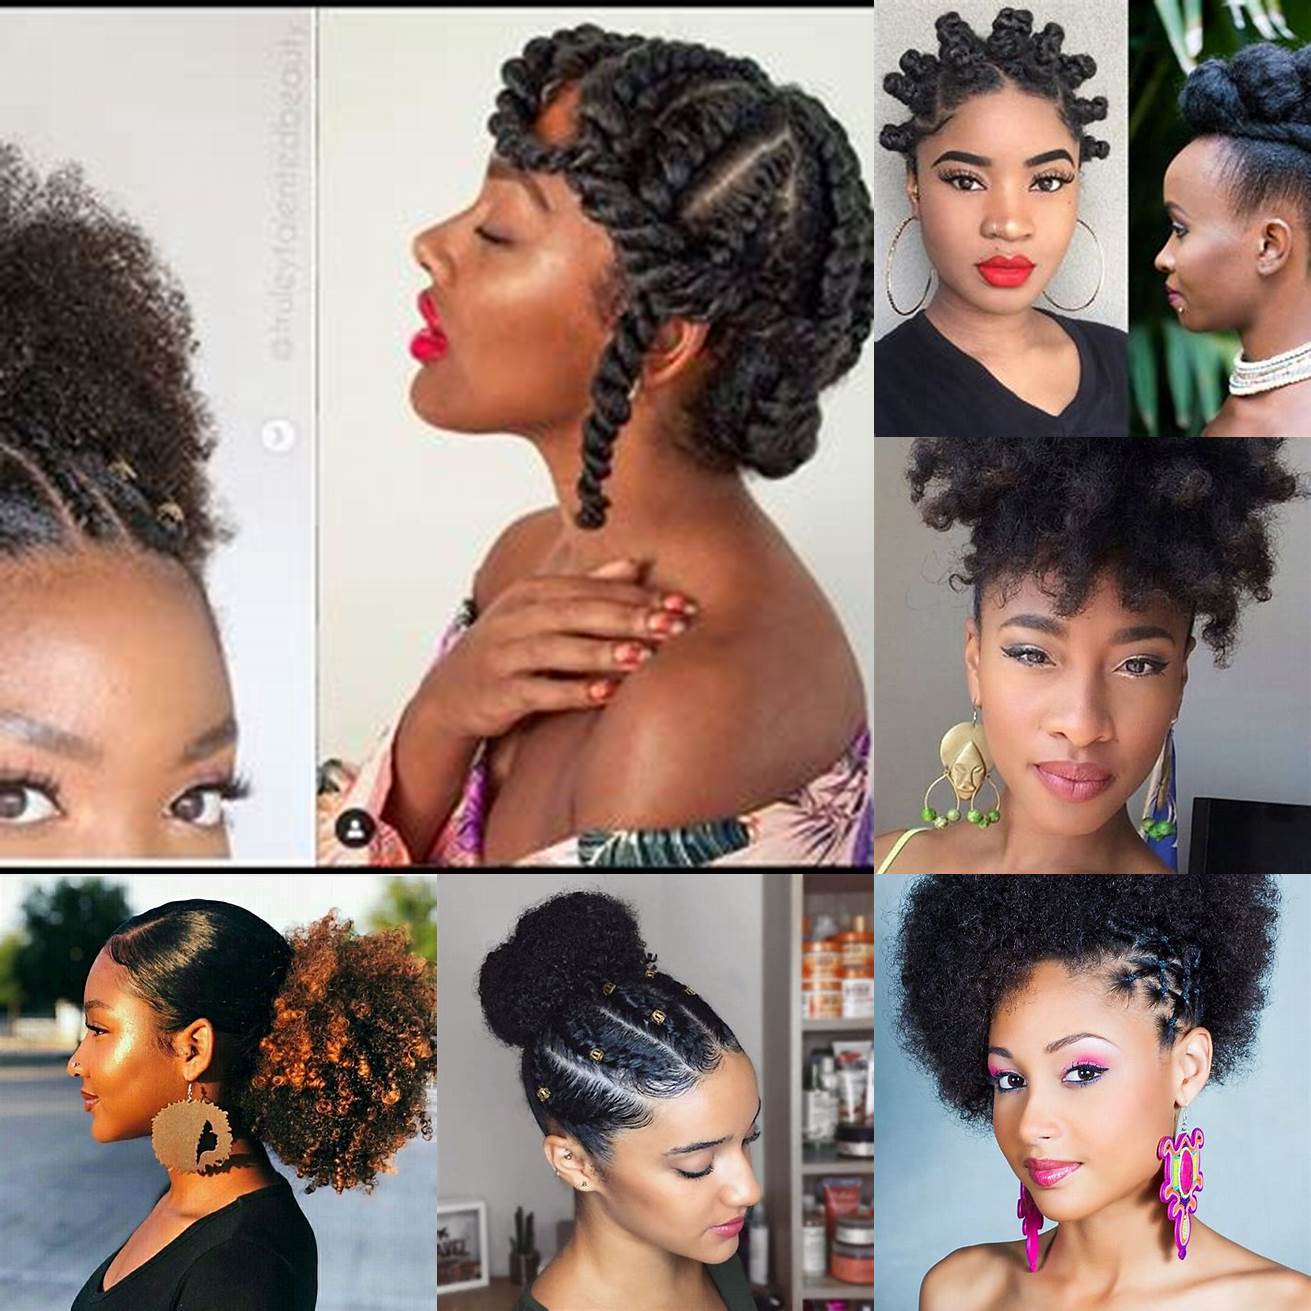 Afro puff cette coiffure consiste à rassembler les cheveux afro naturels en un chignon haut sur la tête Lafro puff peut être réalisé avec ou sans accessoires et peut être agrémenté de mèches de couleurs pour un effet plus original